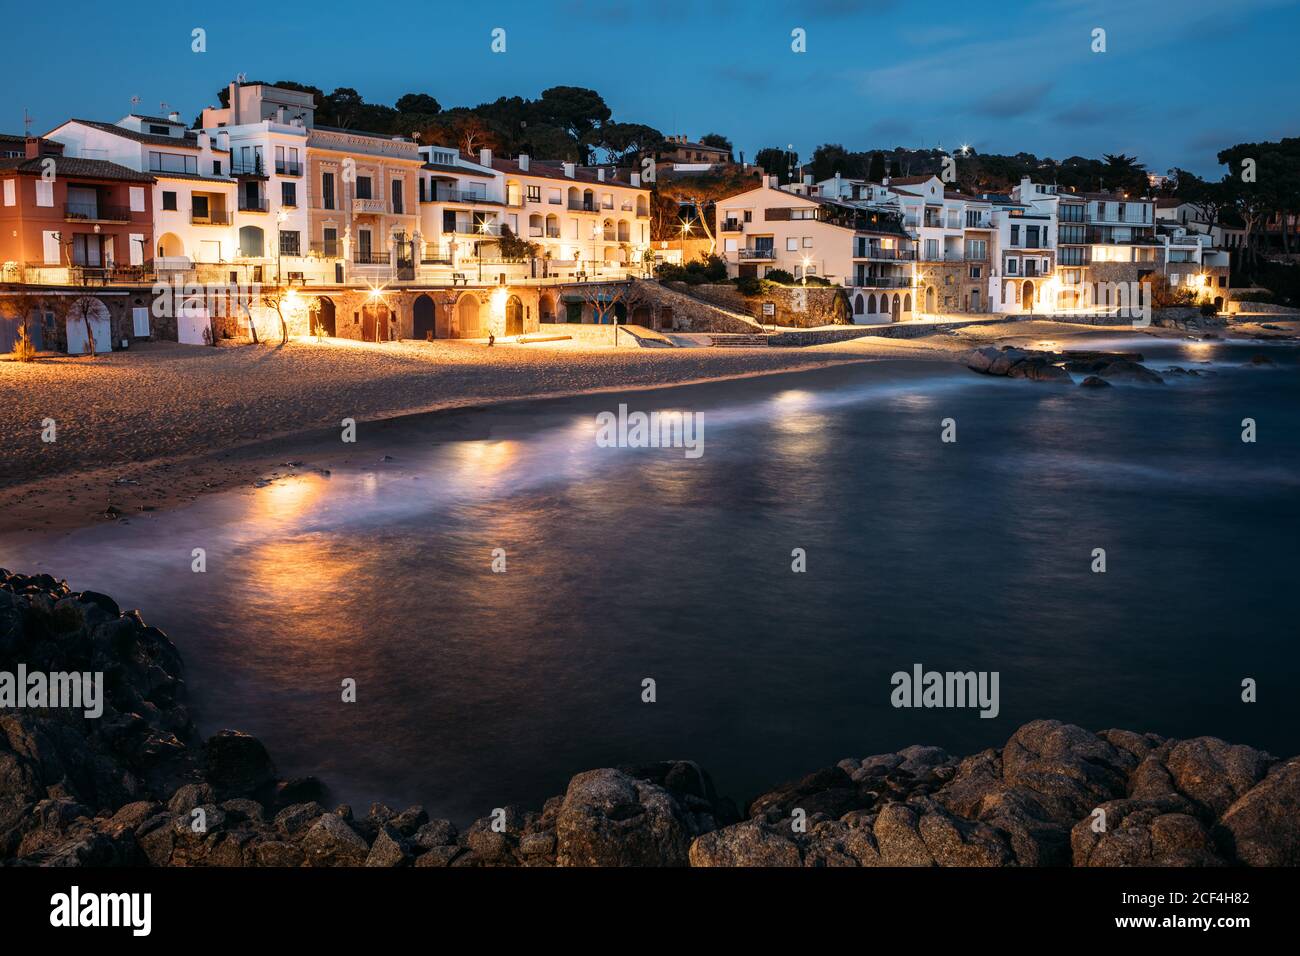 Cristallo blu scuro acqua che riflette luci sulla lanterna sulla riva con edifici architettonici in serata a Girona, Catalogna, Spagna Foto Stock